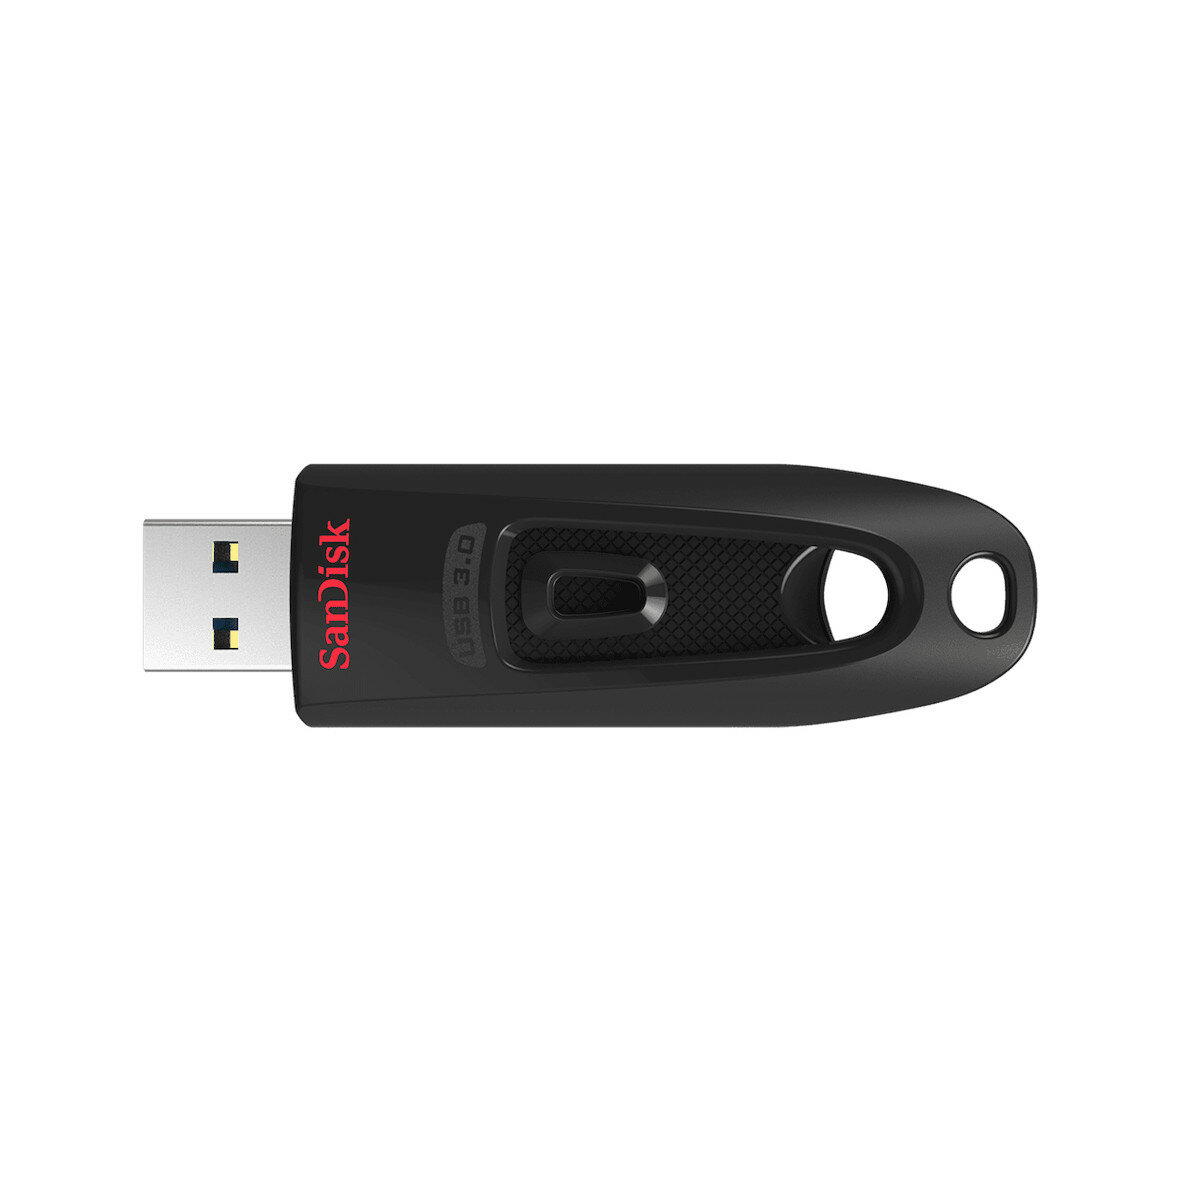 Pendrive SanDisk Ultra USB 3.0 128 GB widoczny z góry z wysuniętym złączem